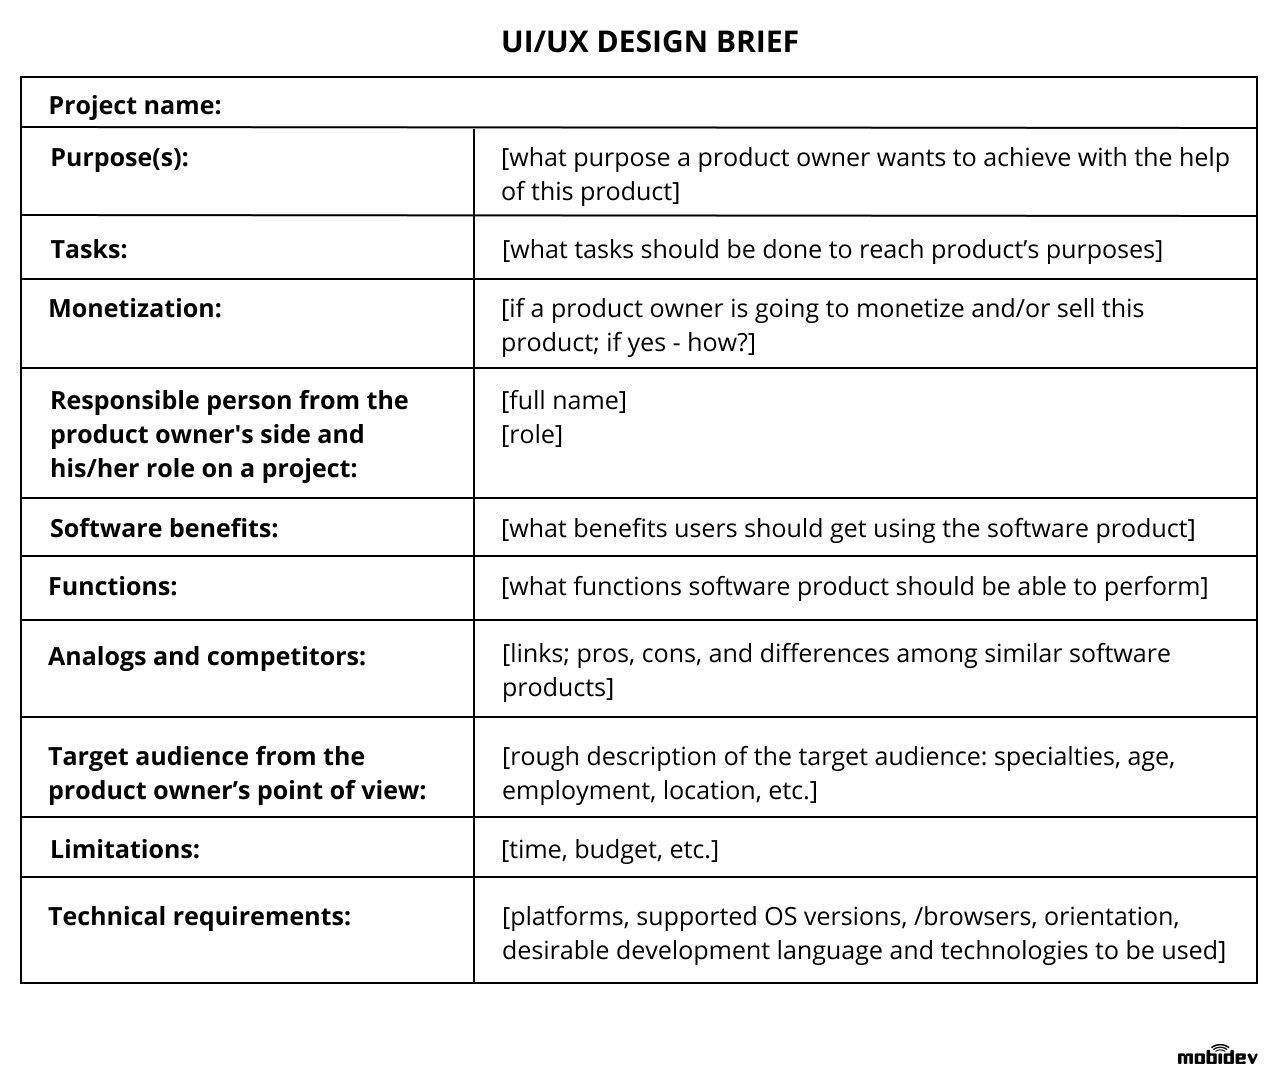 UI/UX design brief example